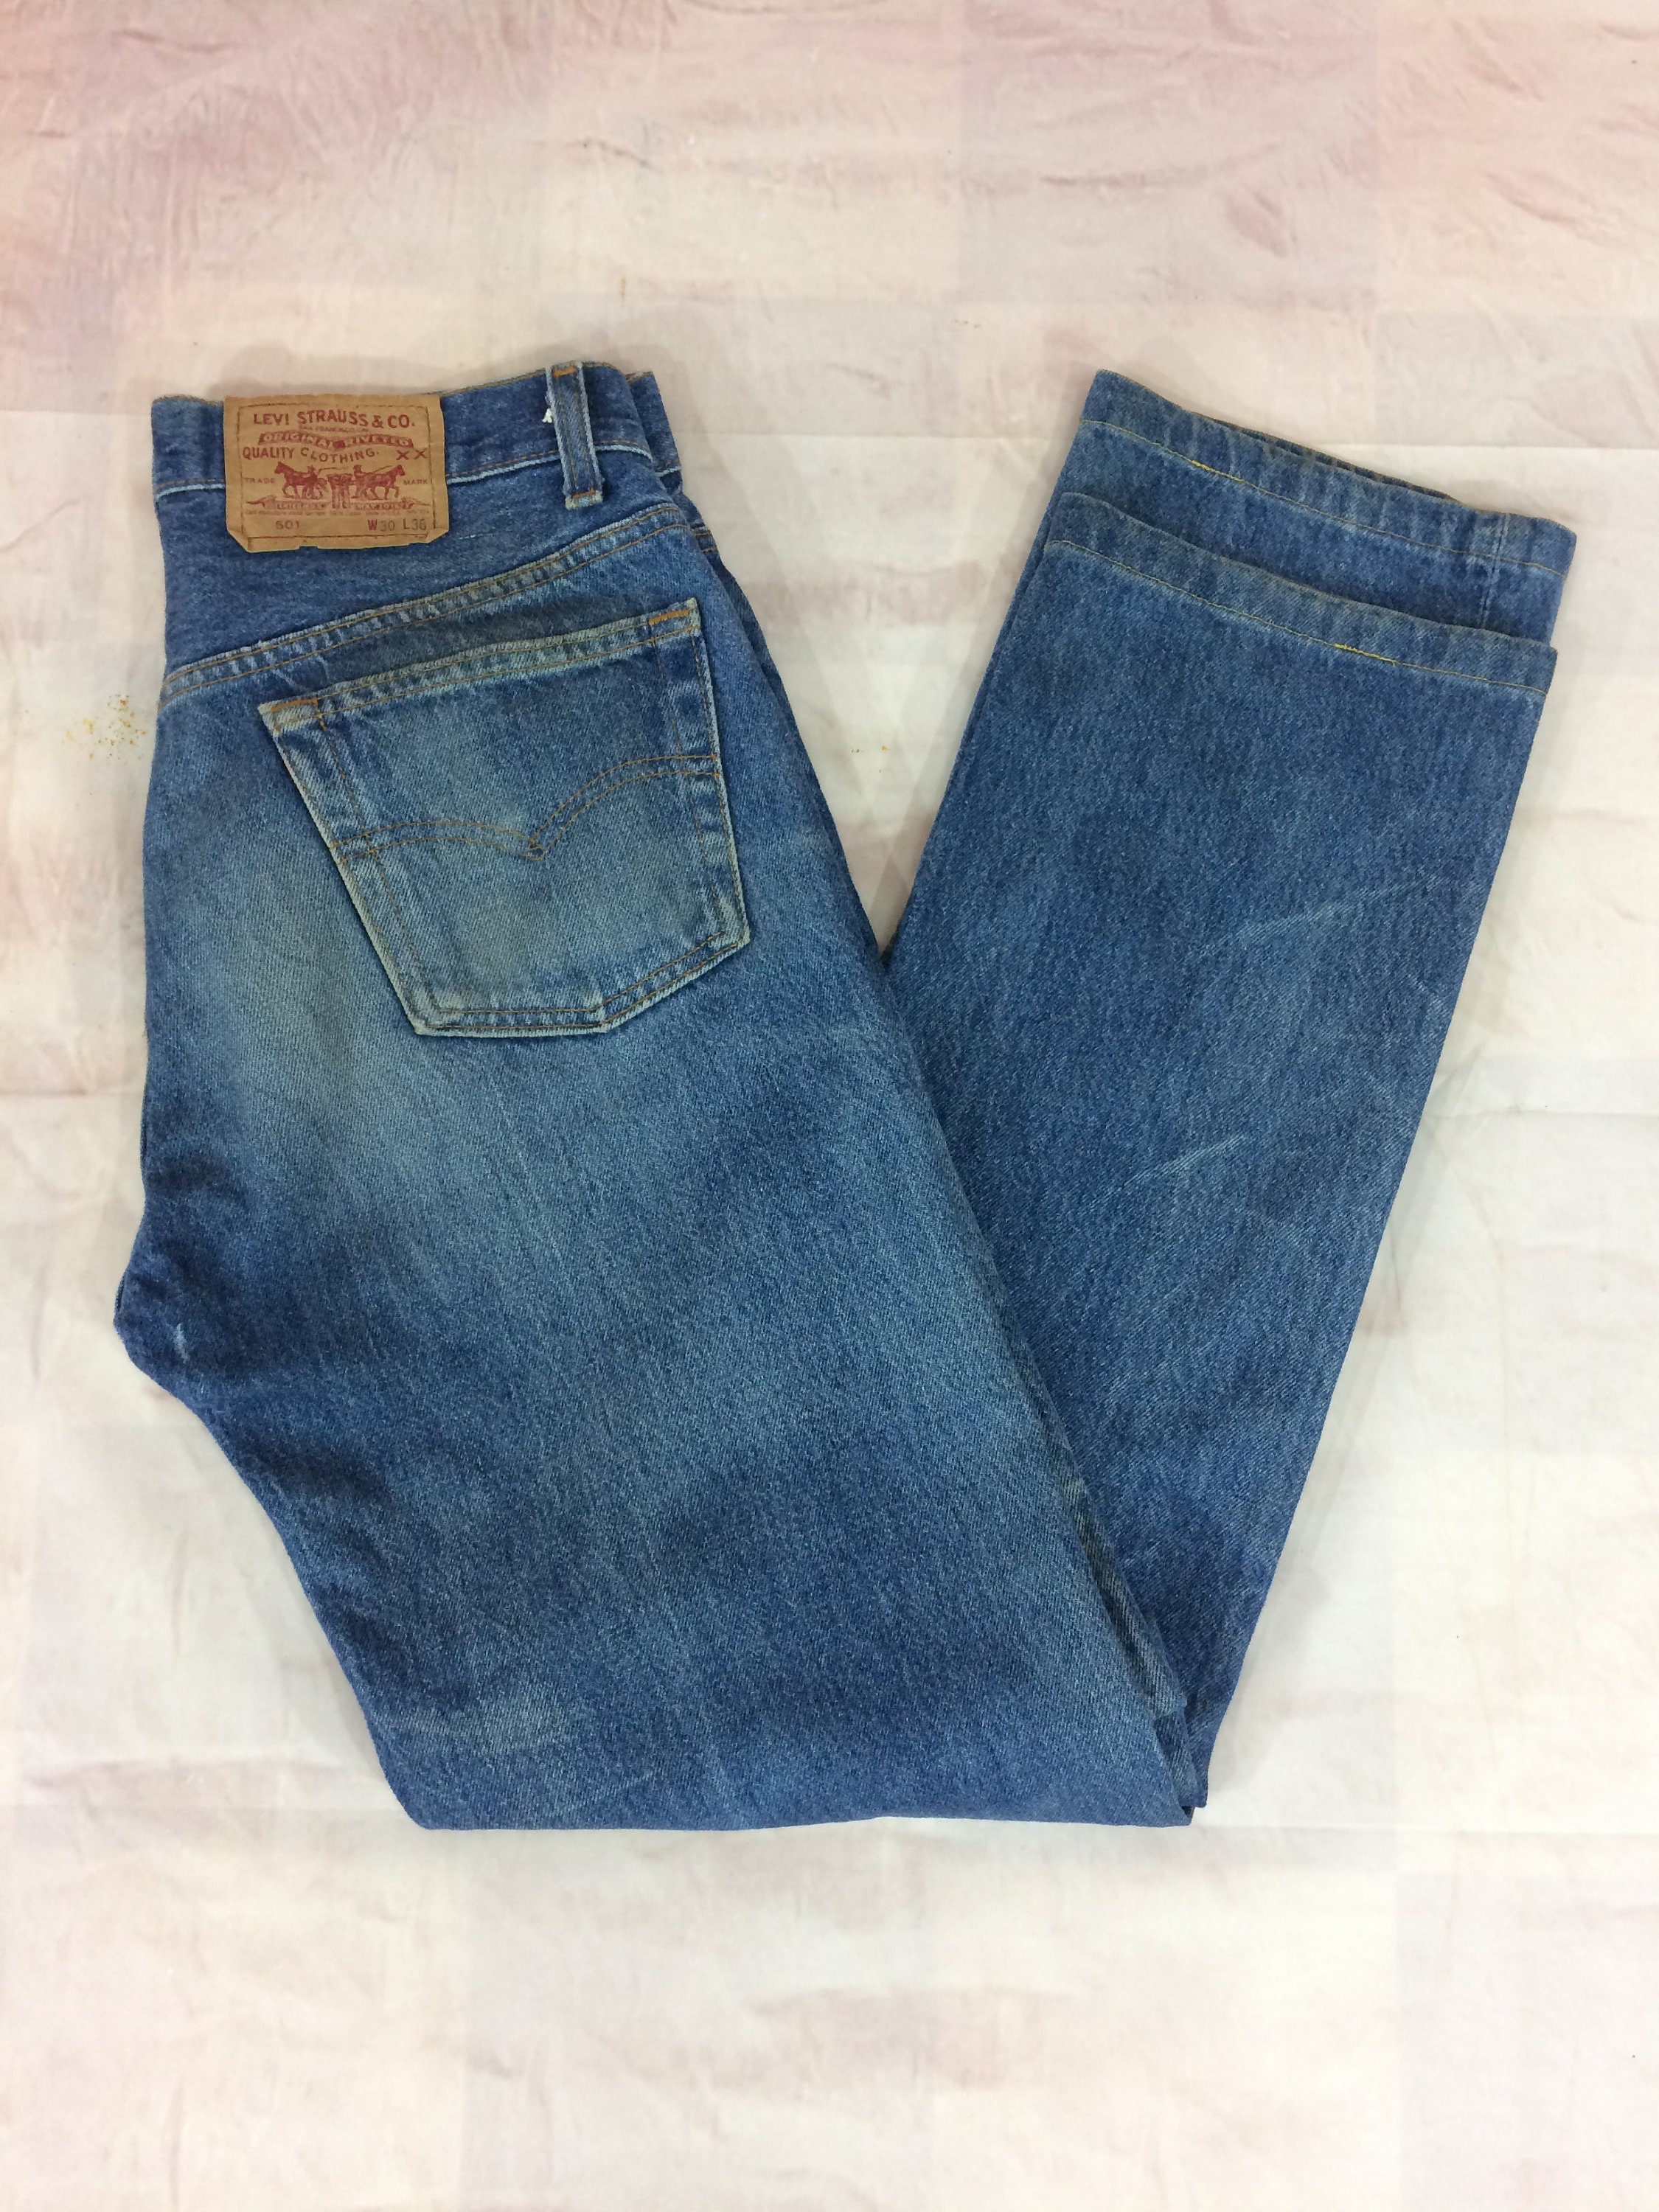 Sz 29 Vintage Levis 501 Women's Distressed Jeans W29 L32 - Etsy